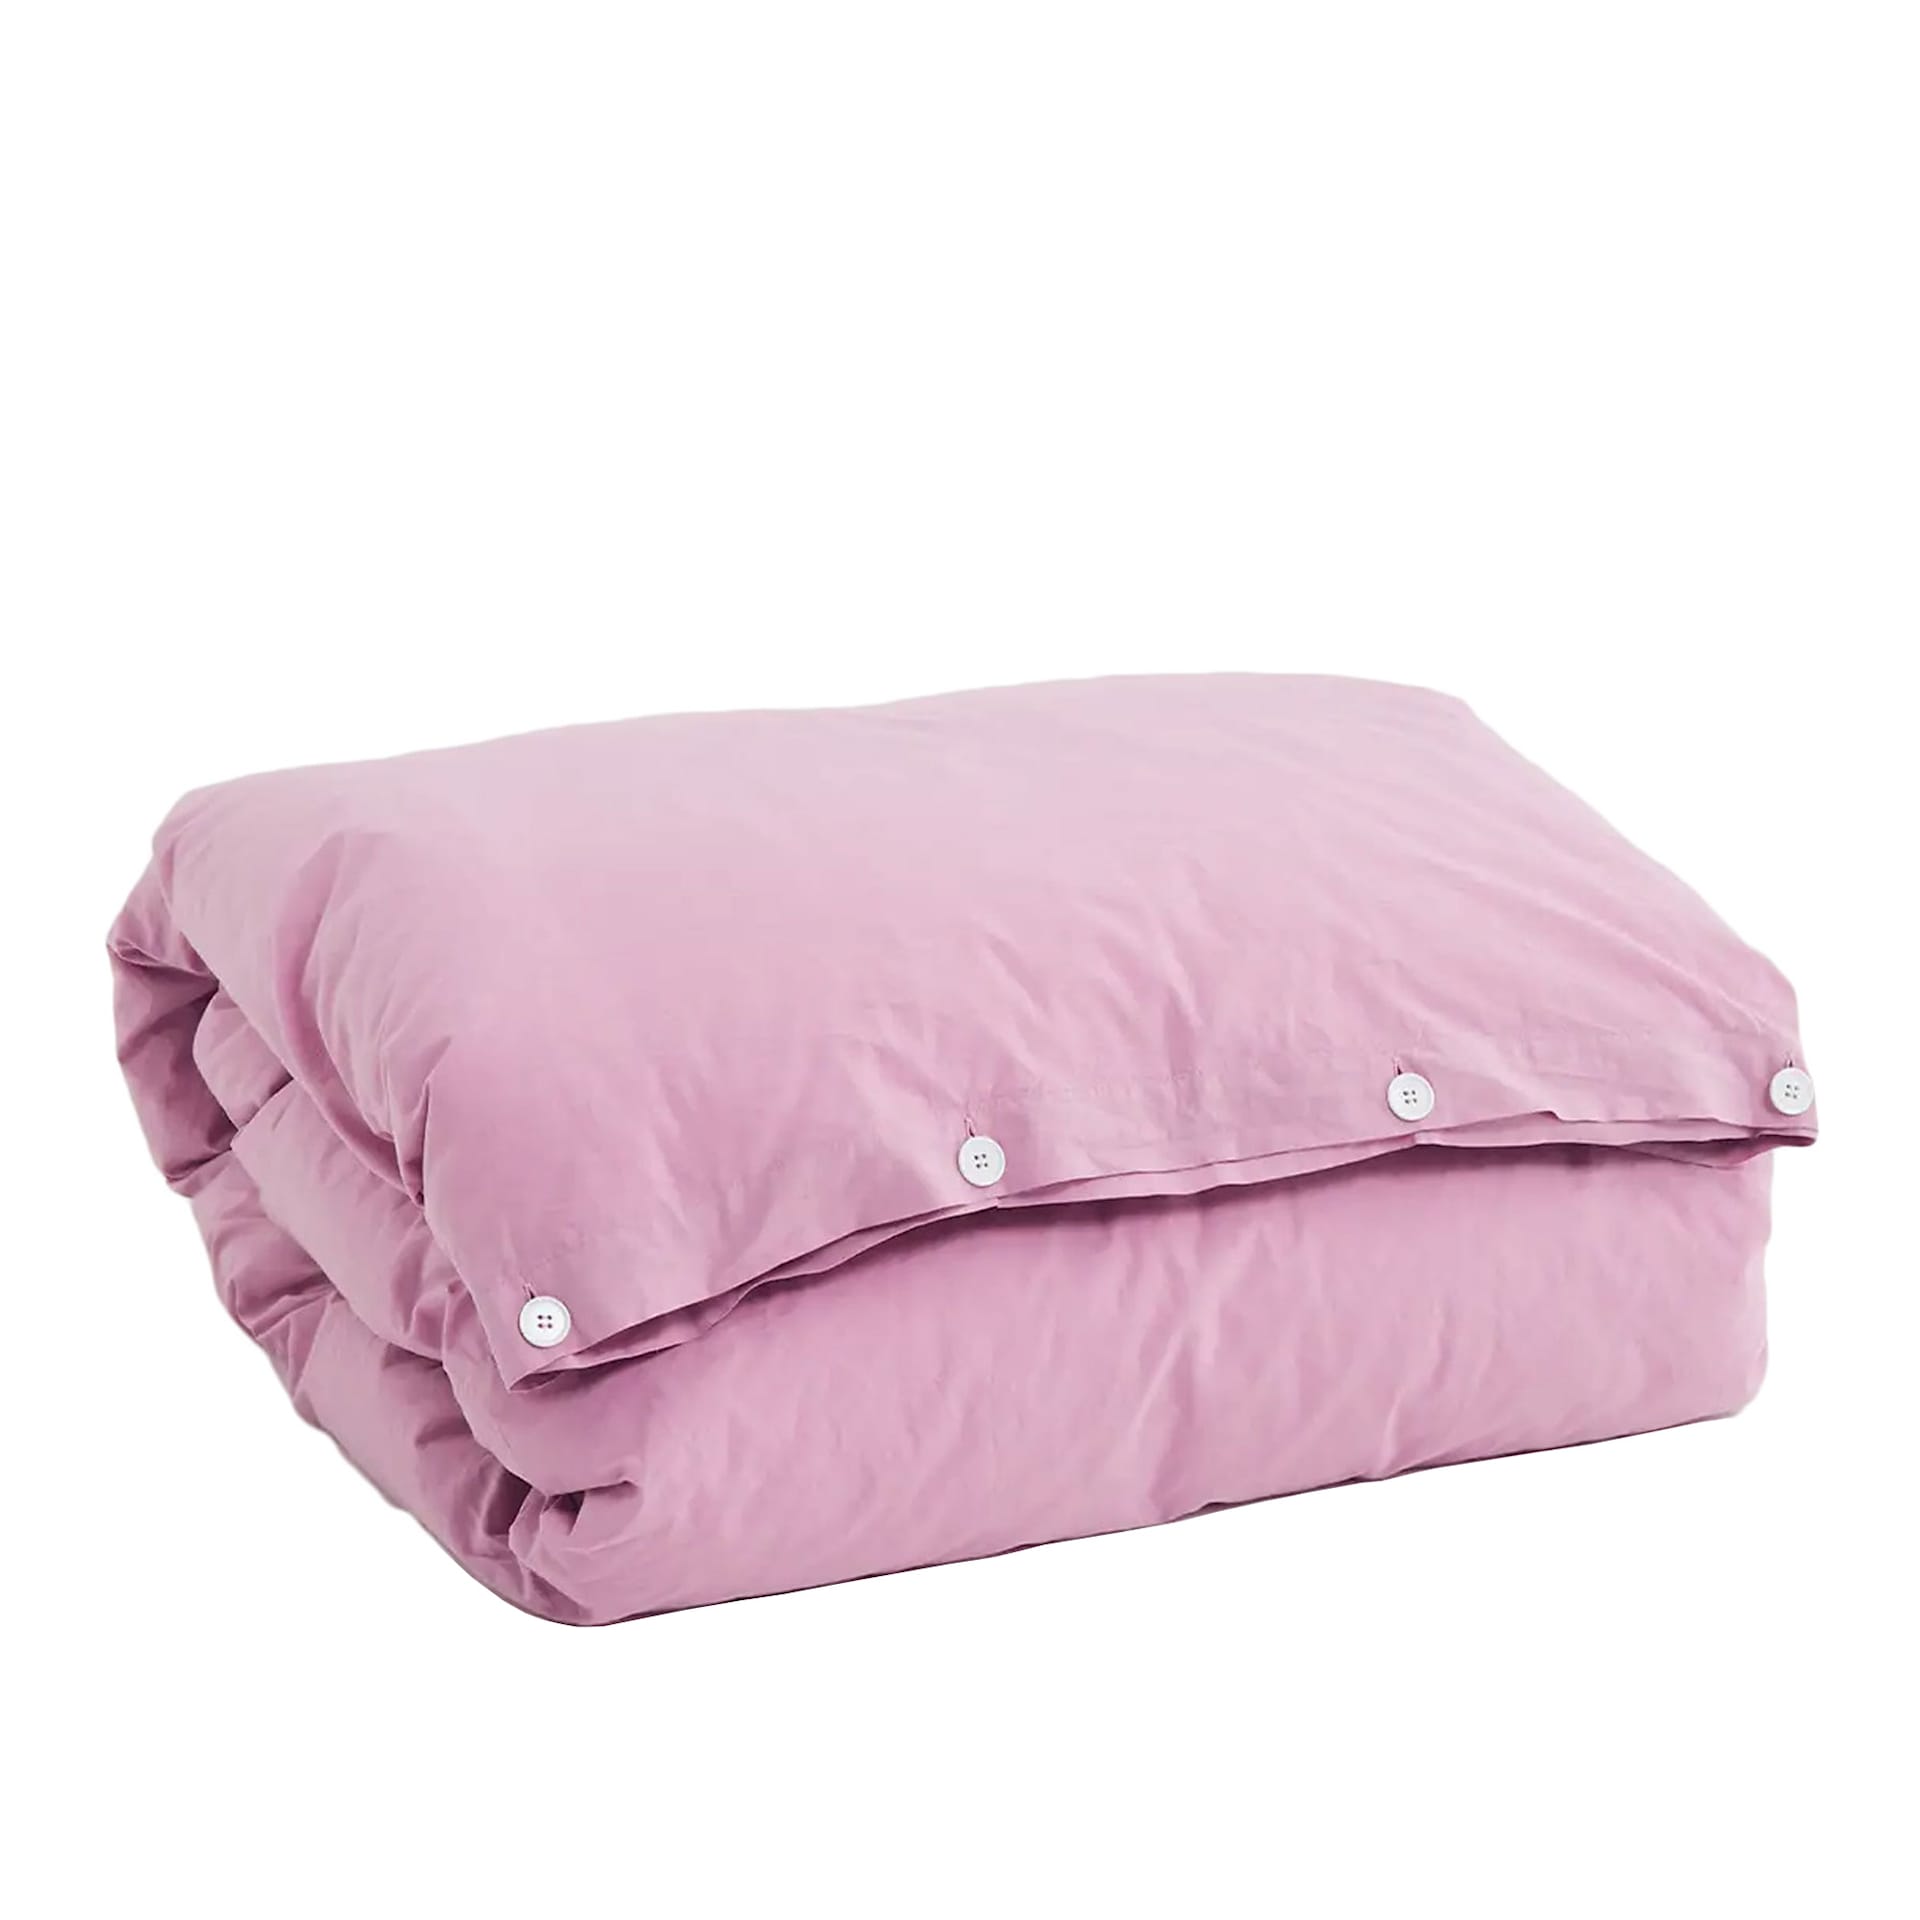 Percale Duvet Cover Mallow Pink - TEKLA - NO GA